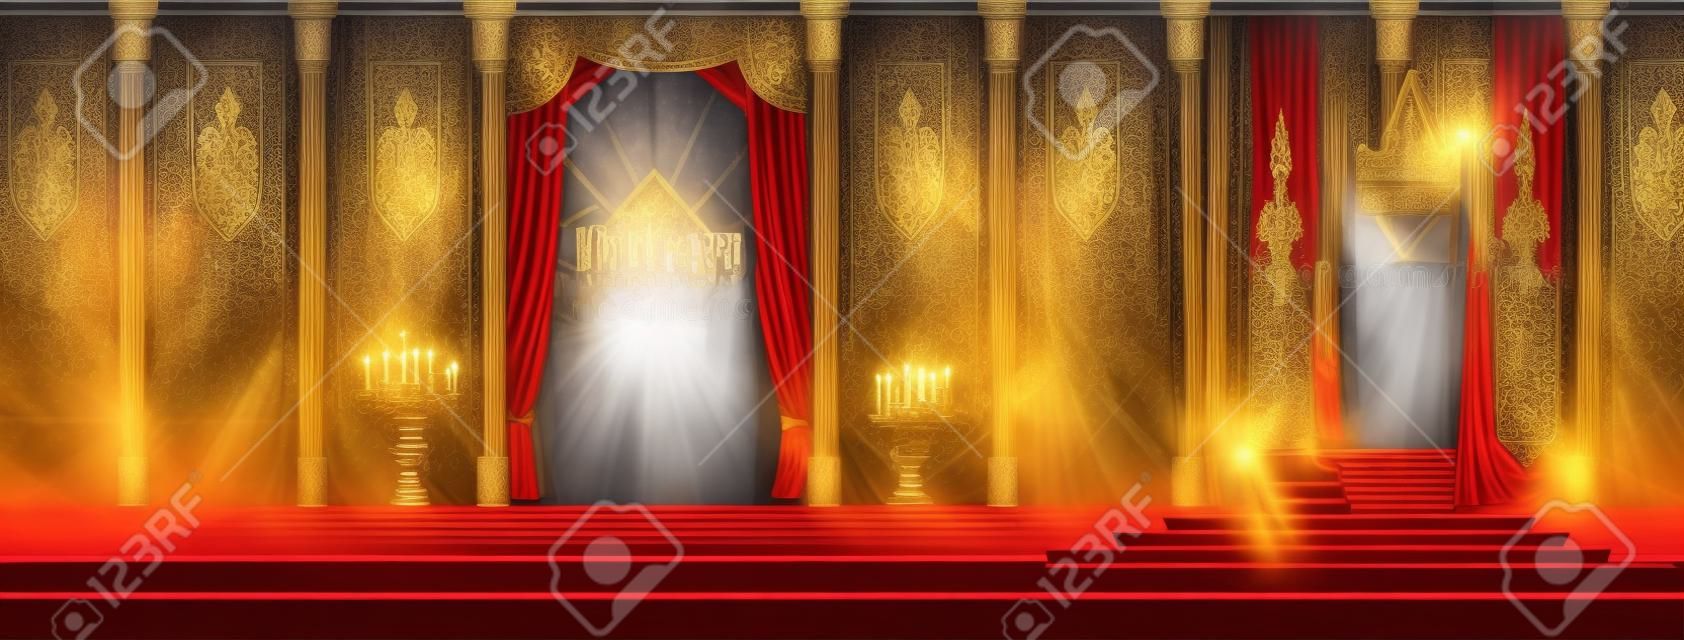 Castelo medieval espaçoso salão de trono ou salão de baile interior cartoon vector. Caminho tapete vermelho para reis trono no pedestal, cortinas na janela, bandeiras com emblema real nas paredes, cavaleiros armaduras ilustração